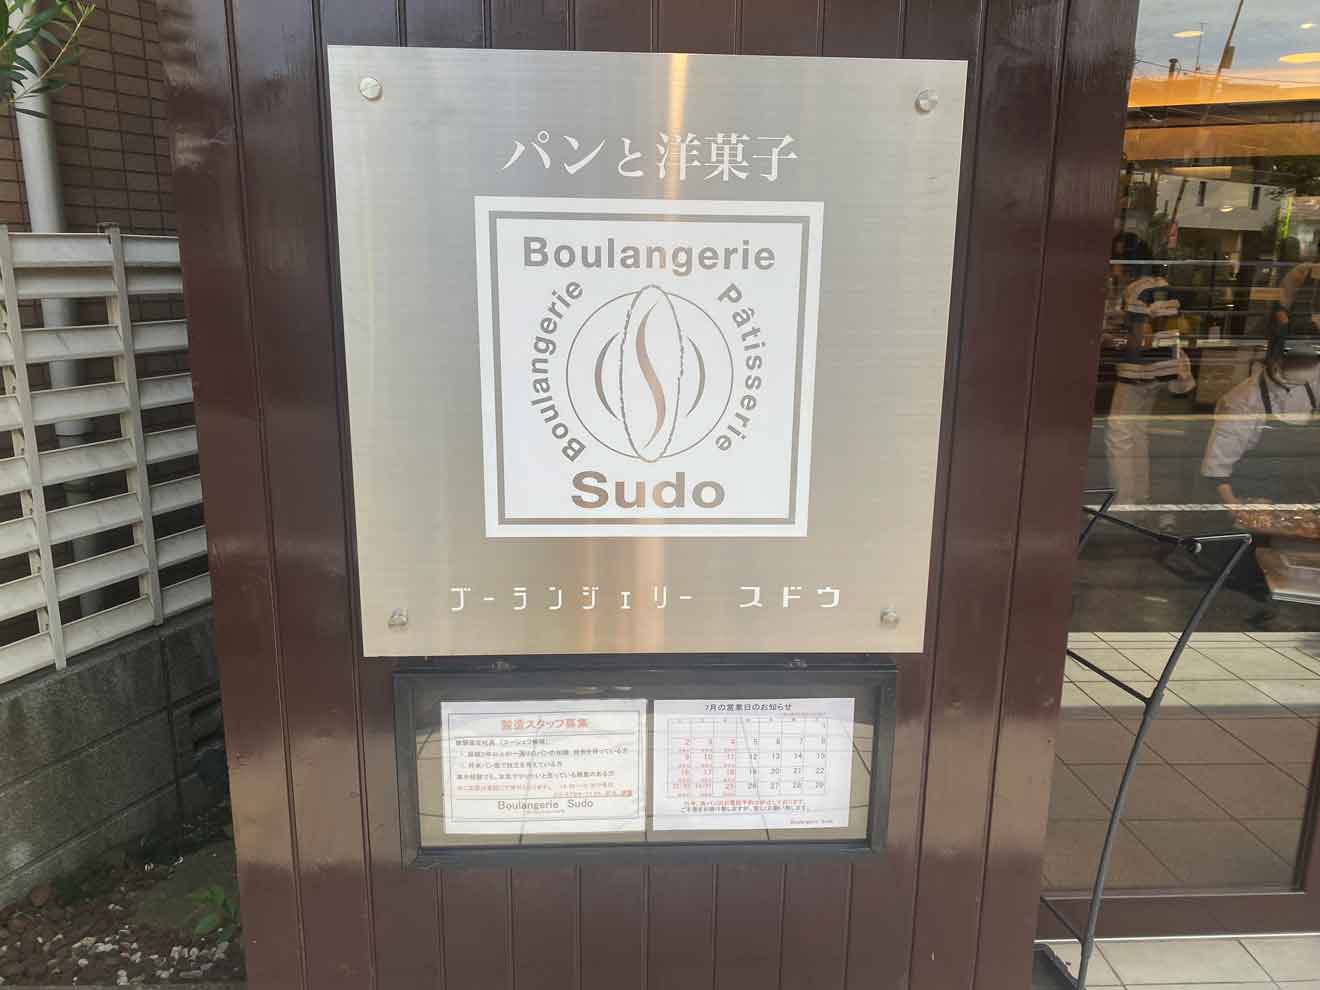 「Boulangerie Sudo」の看板